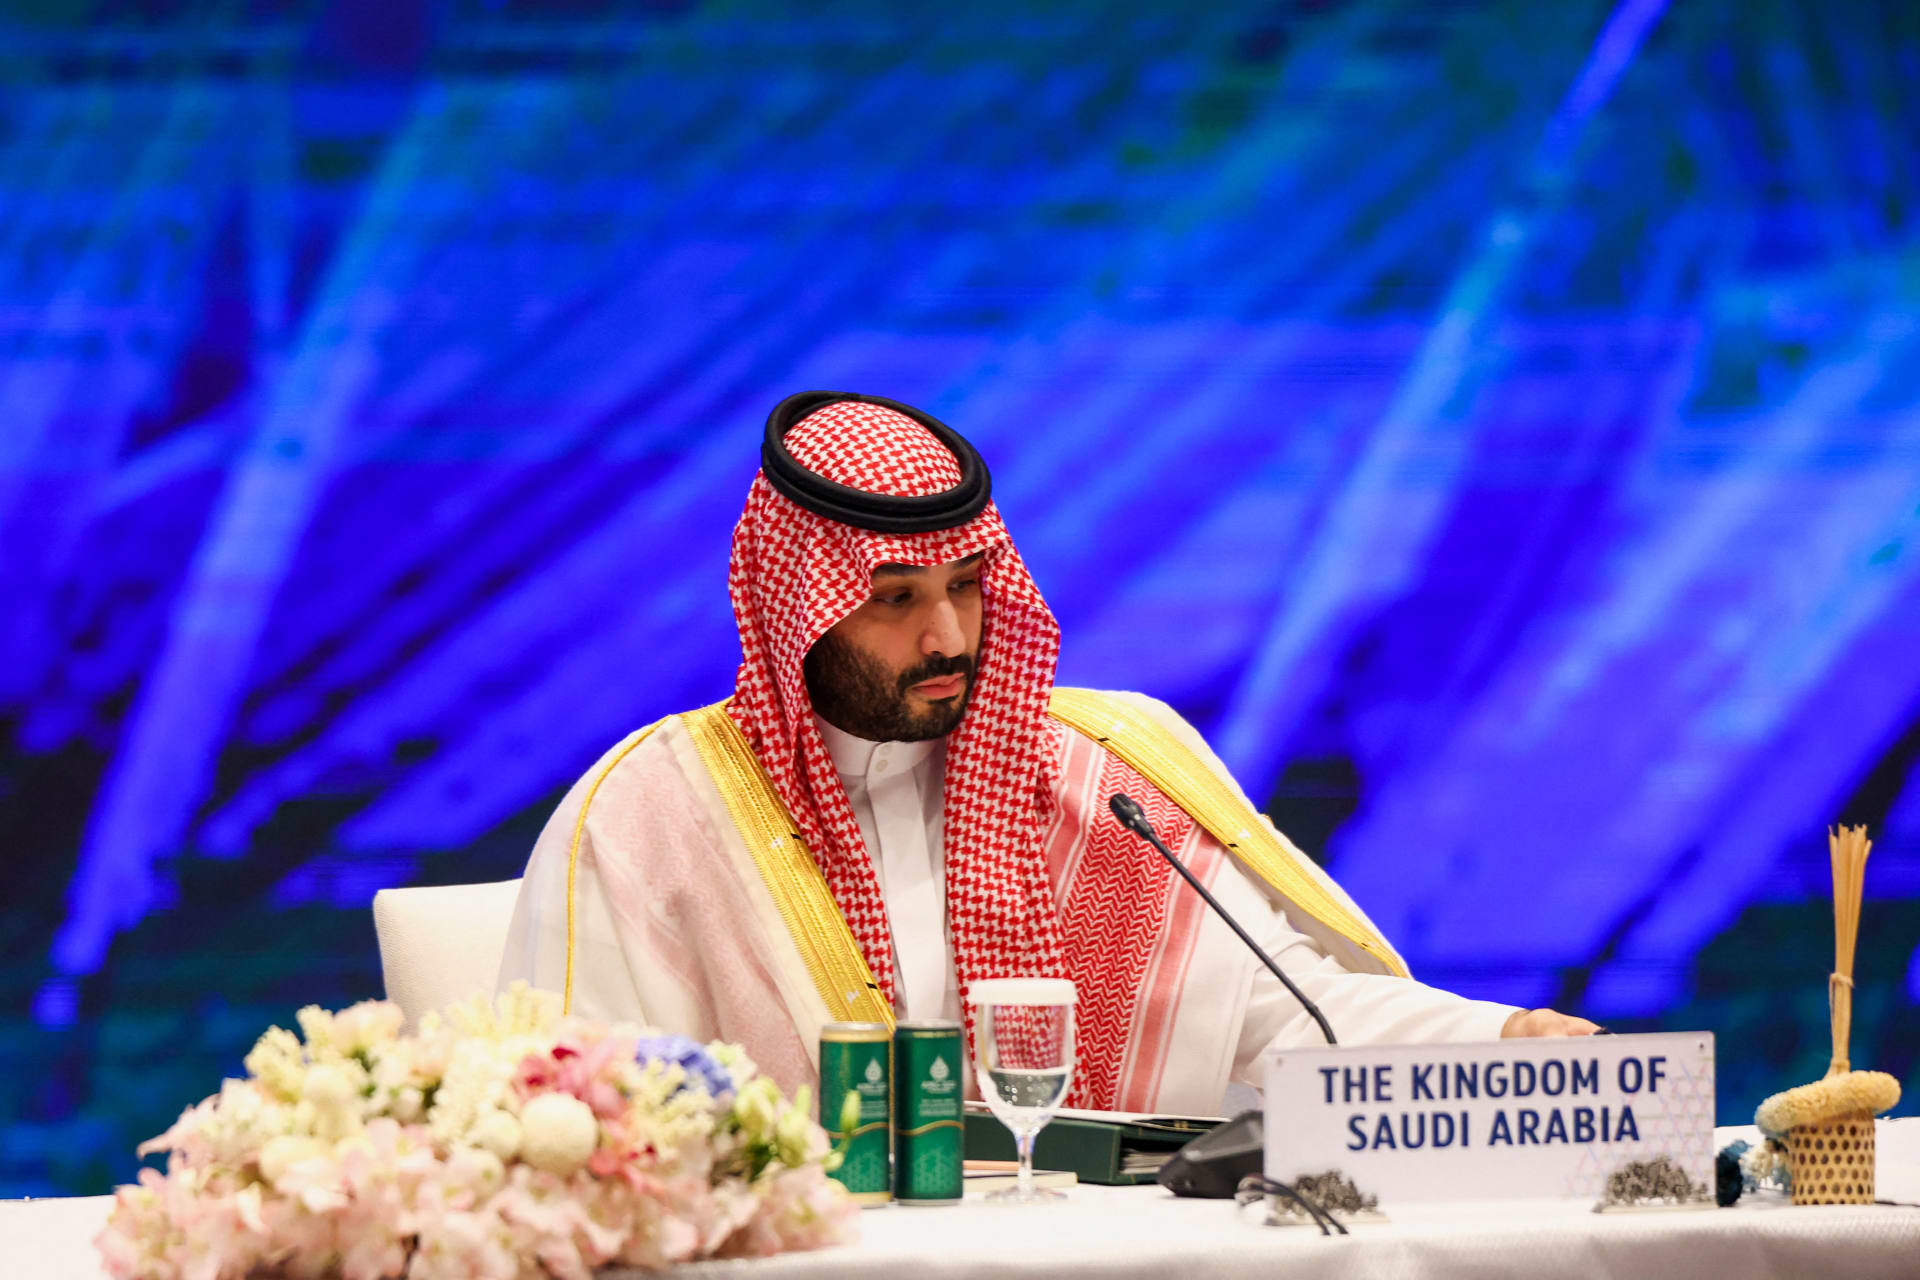  السعودية.. محمد بن سلمان يعلن إتمام نقل 4% من أسهم "أرامكو" لملكية صندوق الاستثمارات العامة